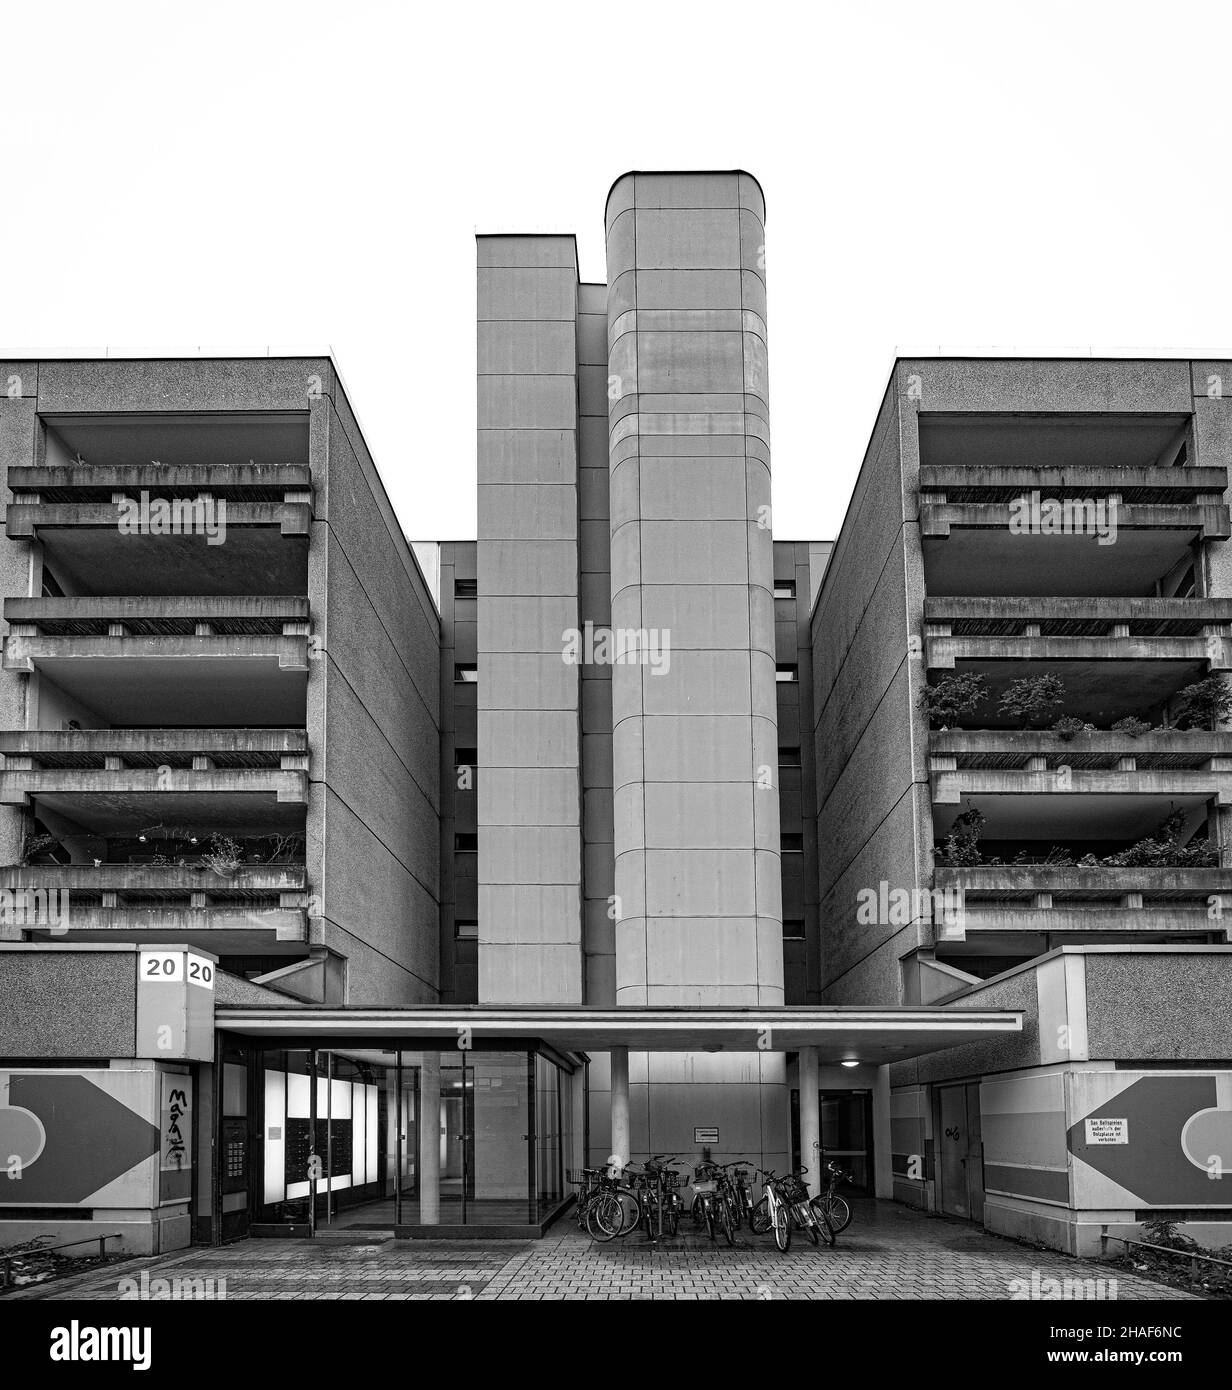 Schöneberger Terrassen, Berlin. Sozialer Wohnungsbau der 1970er Jahre Stock Photo